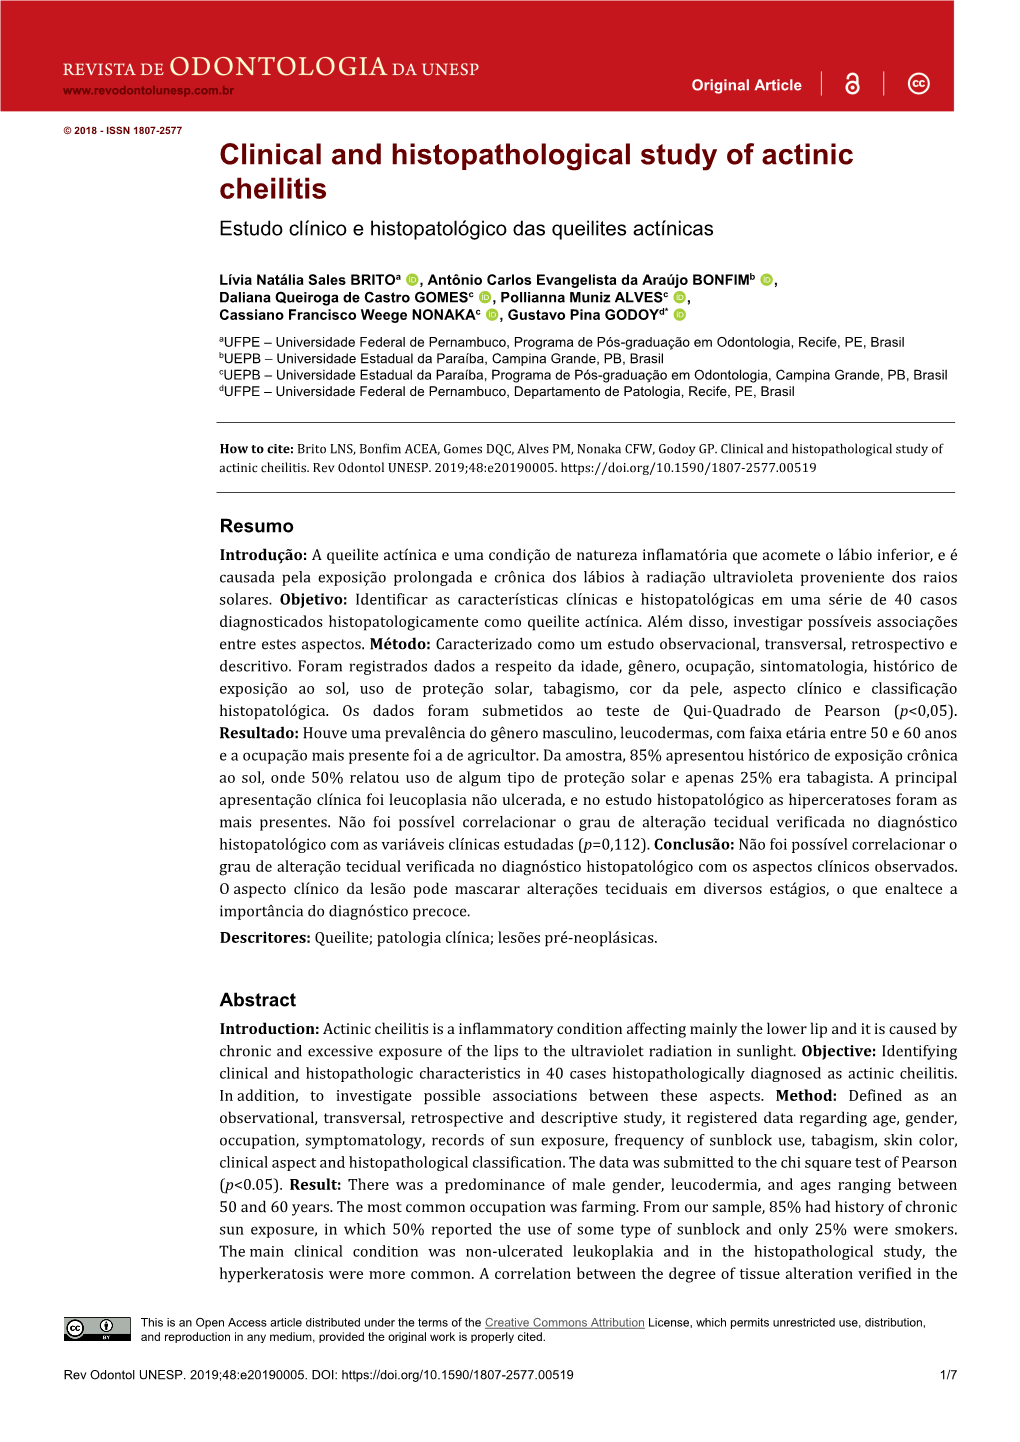 Clinical and Histopathological Study of Actinic Cheilitis Estudo Clínico E Histopatológico Das Queilites Actínicas